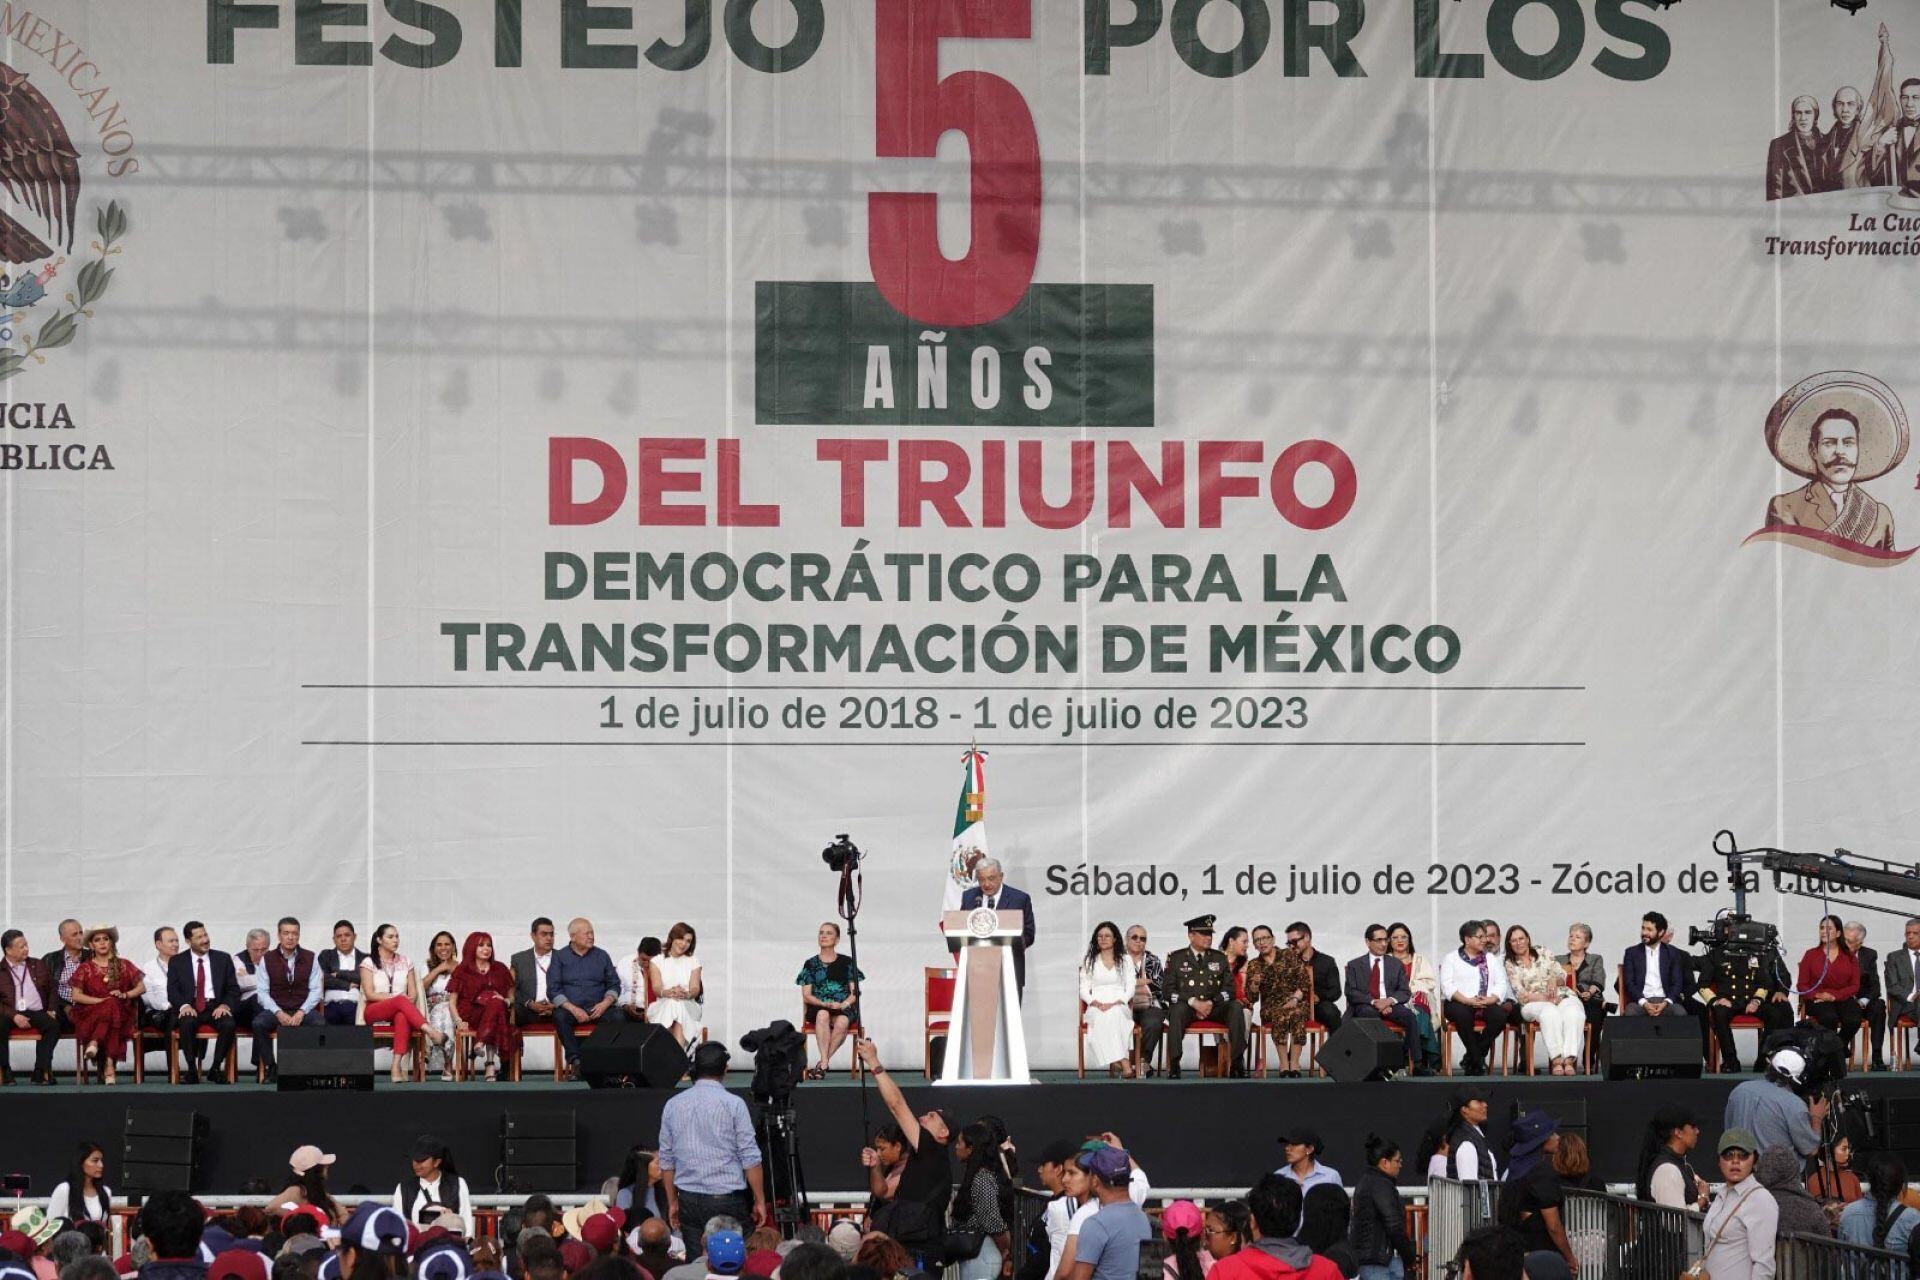 Andrés Manuel López Obrador, presidente de México, encabezó el Festejo por los 5 años del Triunfo Democrático para la Transformación de México realizado en el Zócalo capitalino